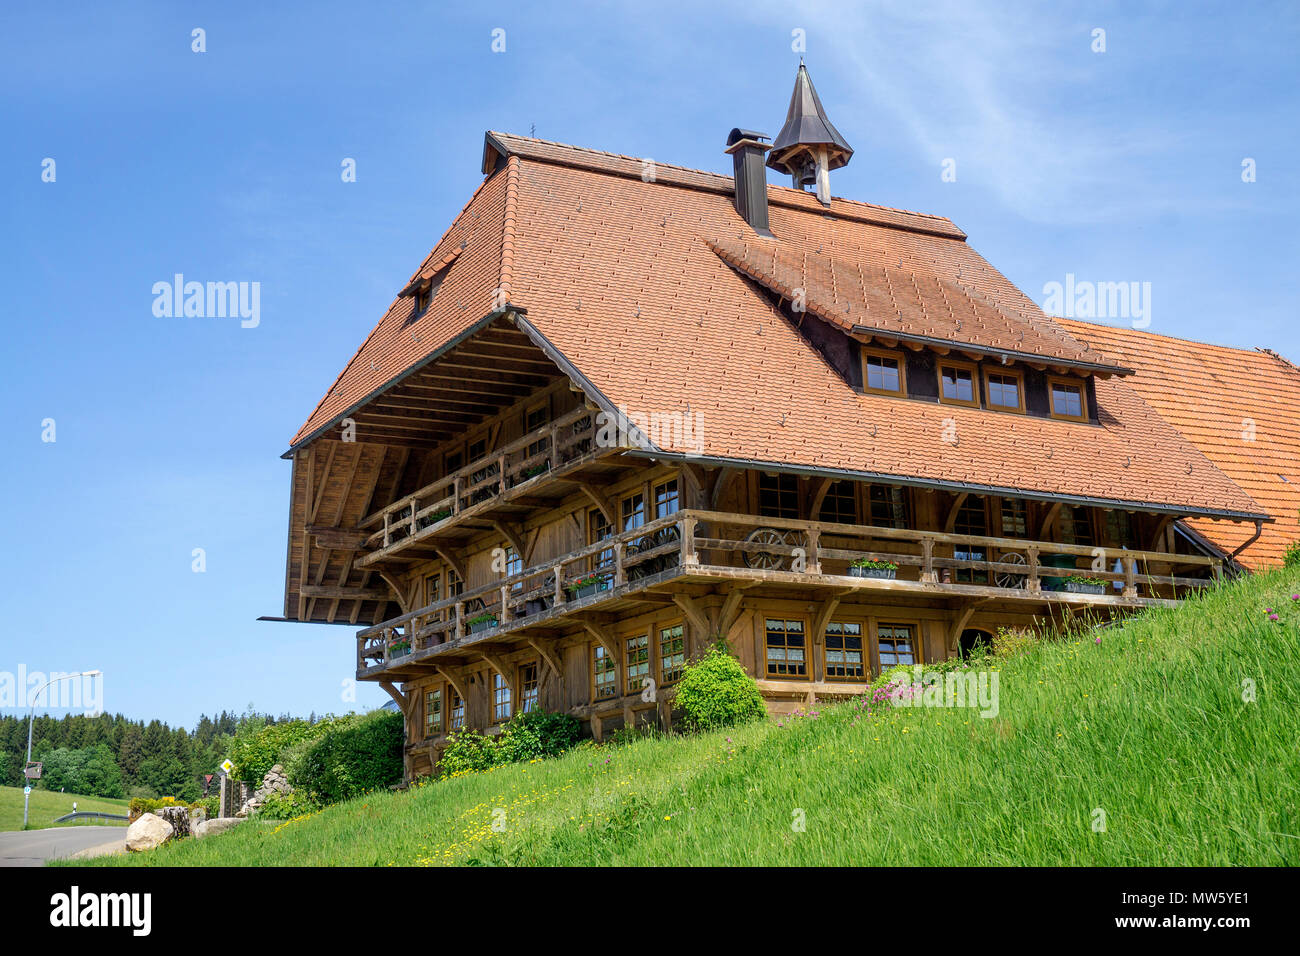 Typischen hölzernen Schwarzwaldhaus im Village Schonach, Schwarzwald, Baden-Württemberg, Deutschland, Europa Stockfoto